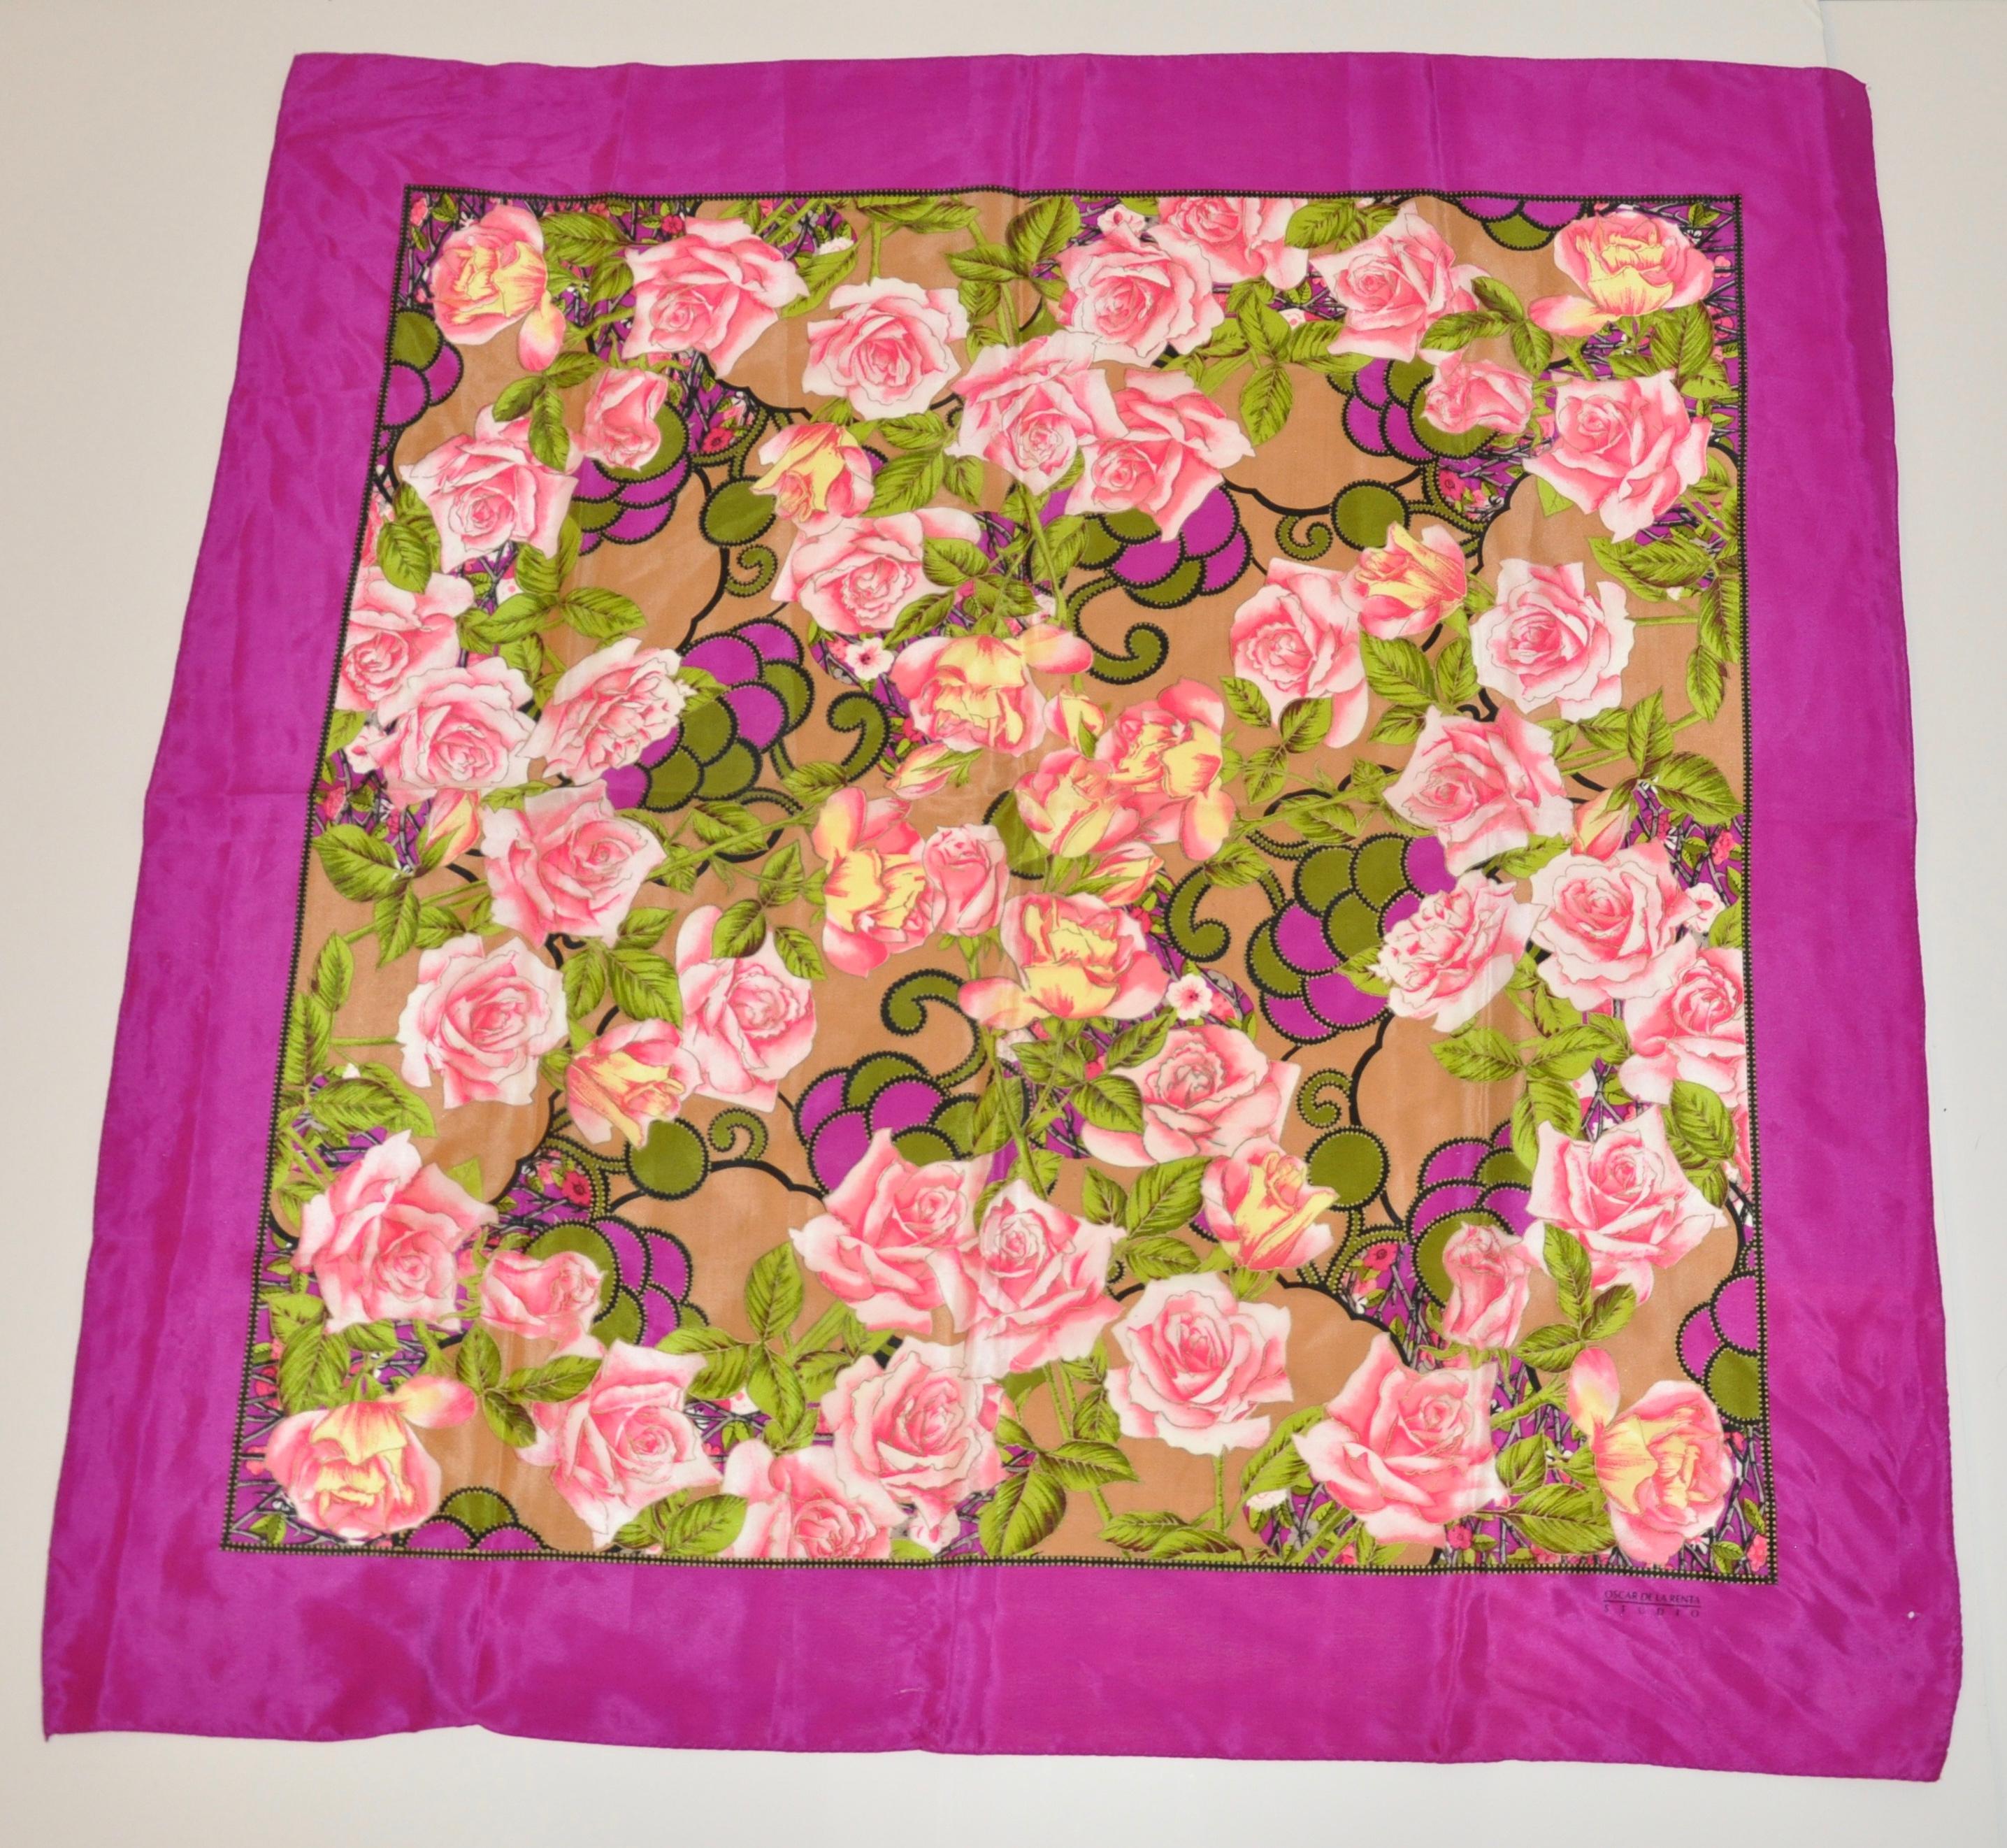        Magnifique écharpe festive en soie d'Oscar de la Renta avec des bordures violettes audacieuses entourant 